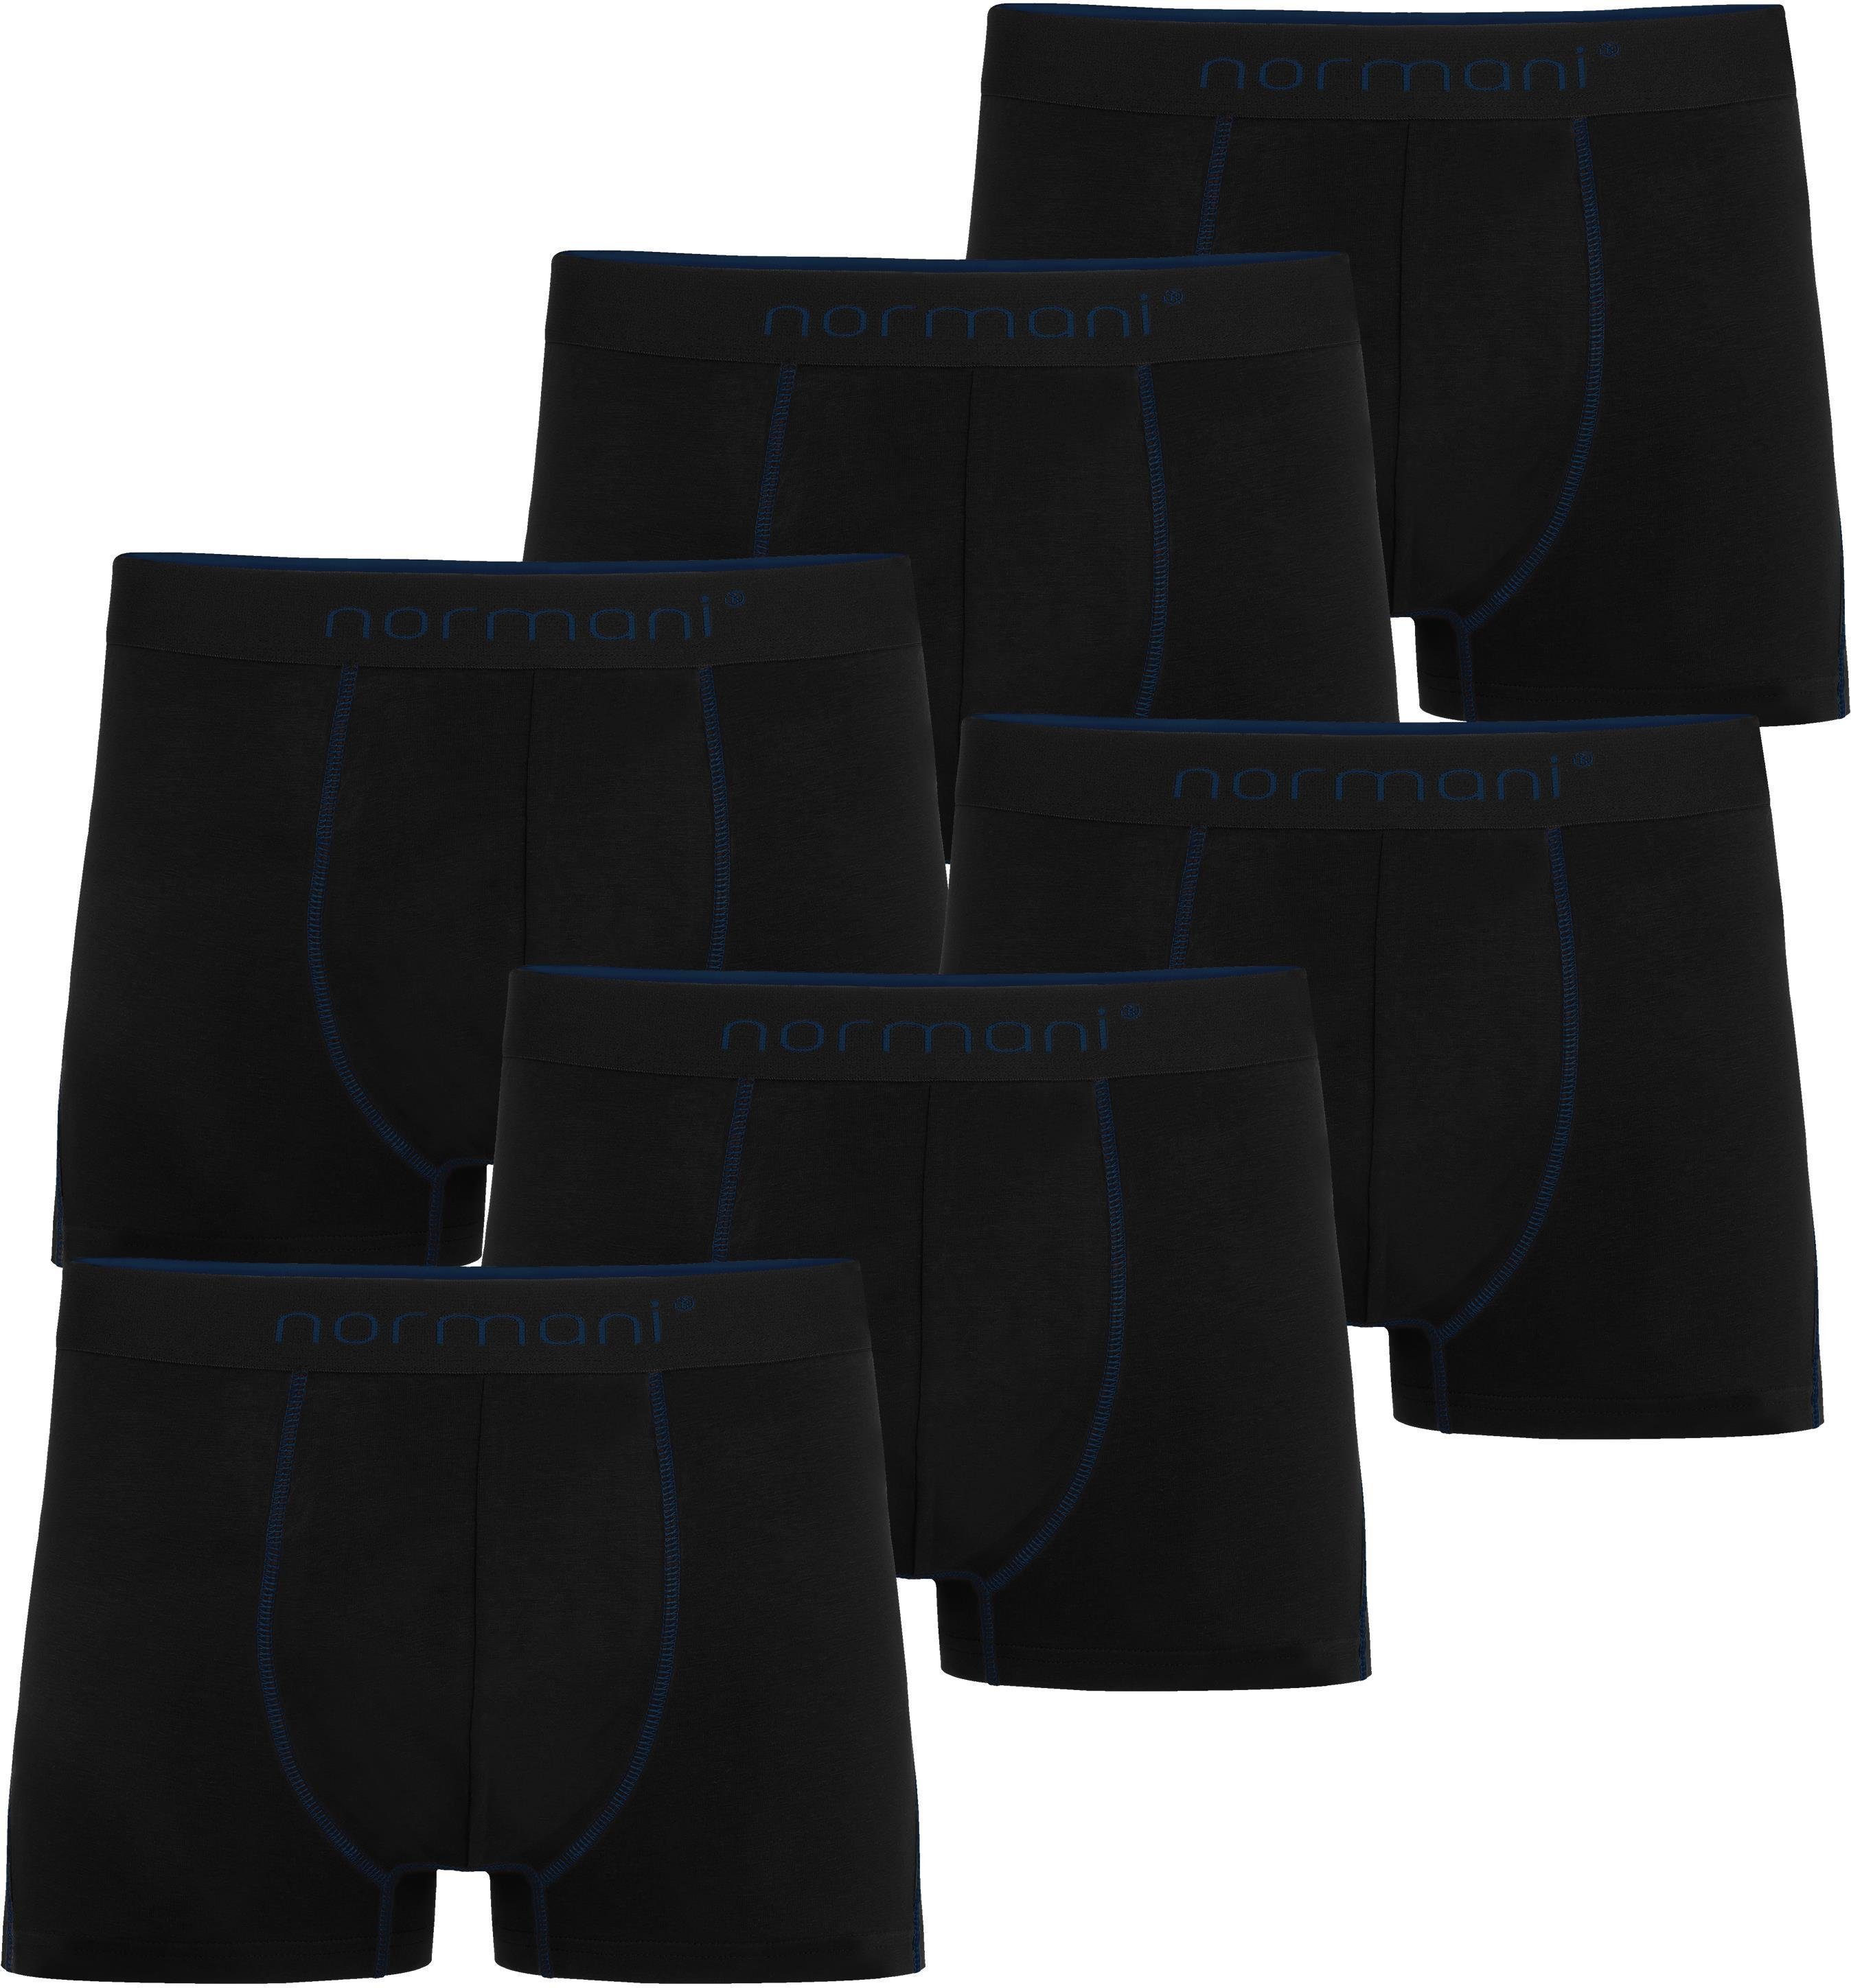 normani Boxershorts 6 Herren Baumwoll-Boxershorts Unterhose aus atmungsaktiver Baumwolle für Männer Dunkelblau